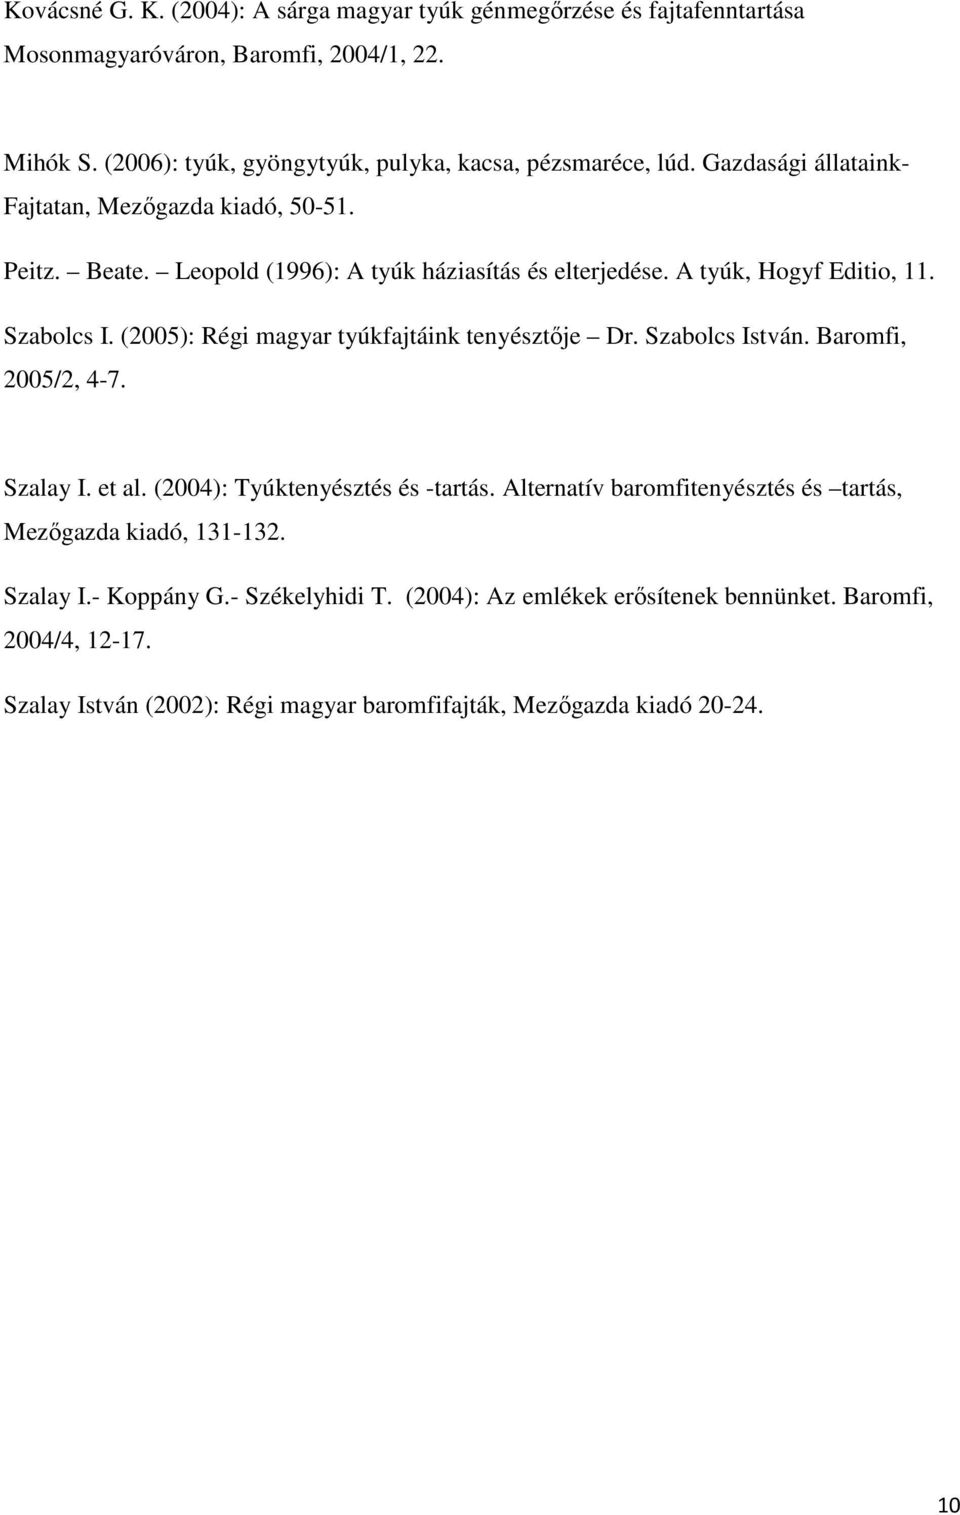 A tyúk, Hogyf Editio, 11. Szabolcs I. (2005): Régi magyar tyúkfajtáink tenyésztője Dr. Szabolcs István. Baromfi, 2005/2, 4-7. Szalay I. et al. (2004): Tyúktenyésztés és -tartás.